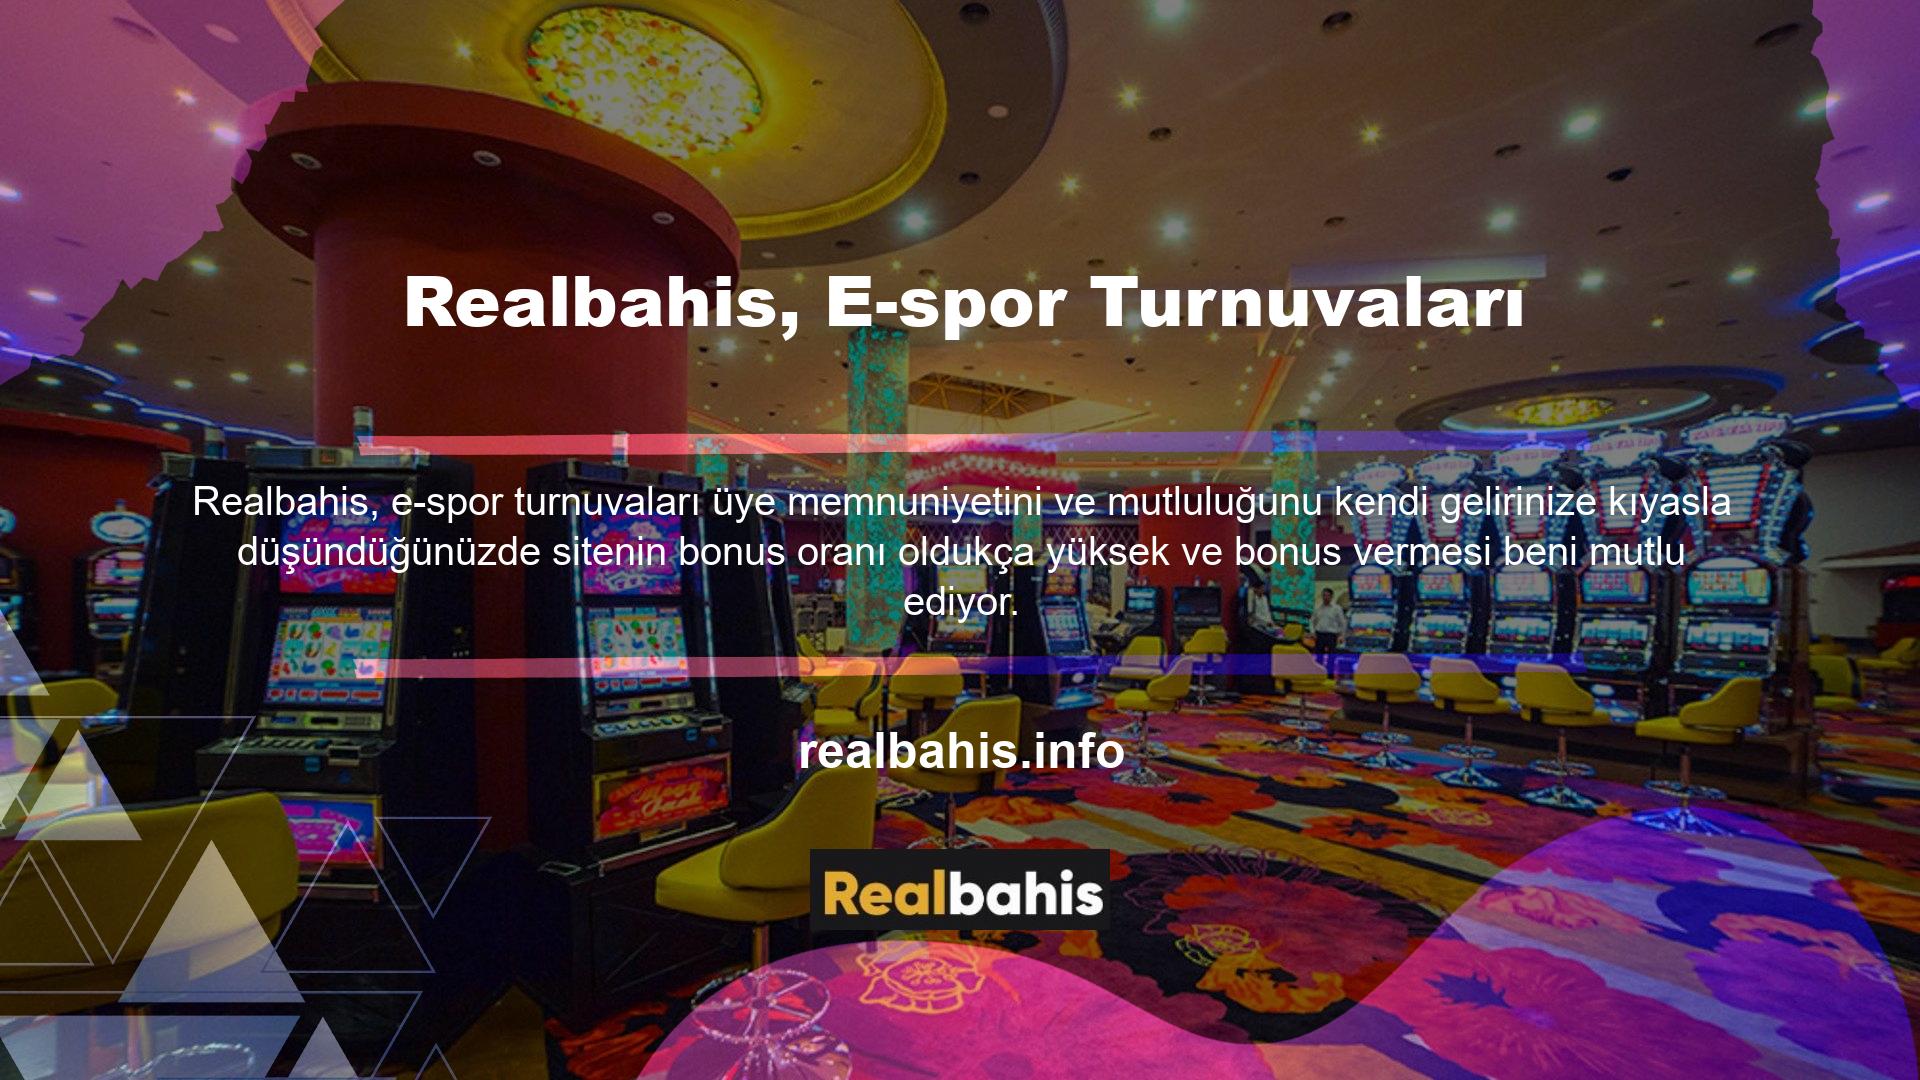 Site, canlı spor, maç öncesi bahis, casino, canlı casino gibi alanlarda ve e-spor bahisleri yapmak isteyen kullanıcılar için bonuslar sunmaktadır